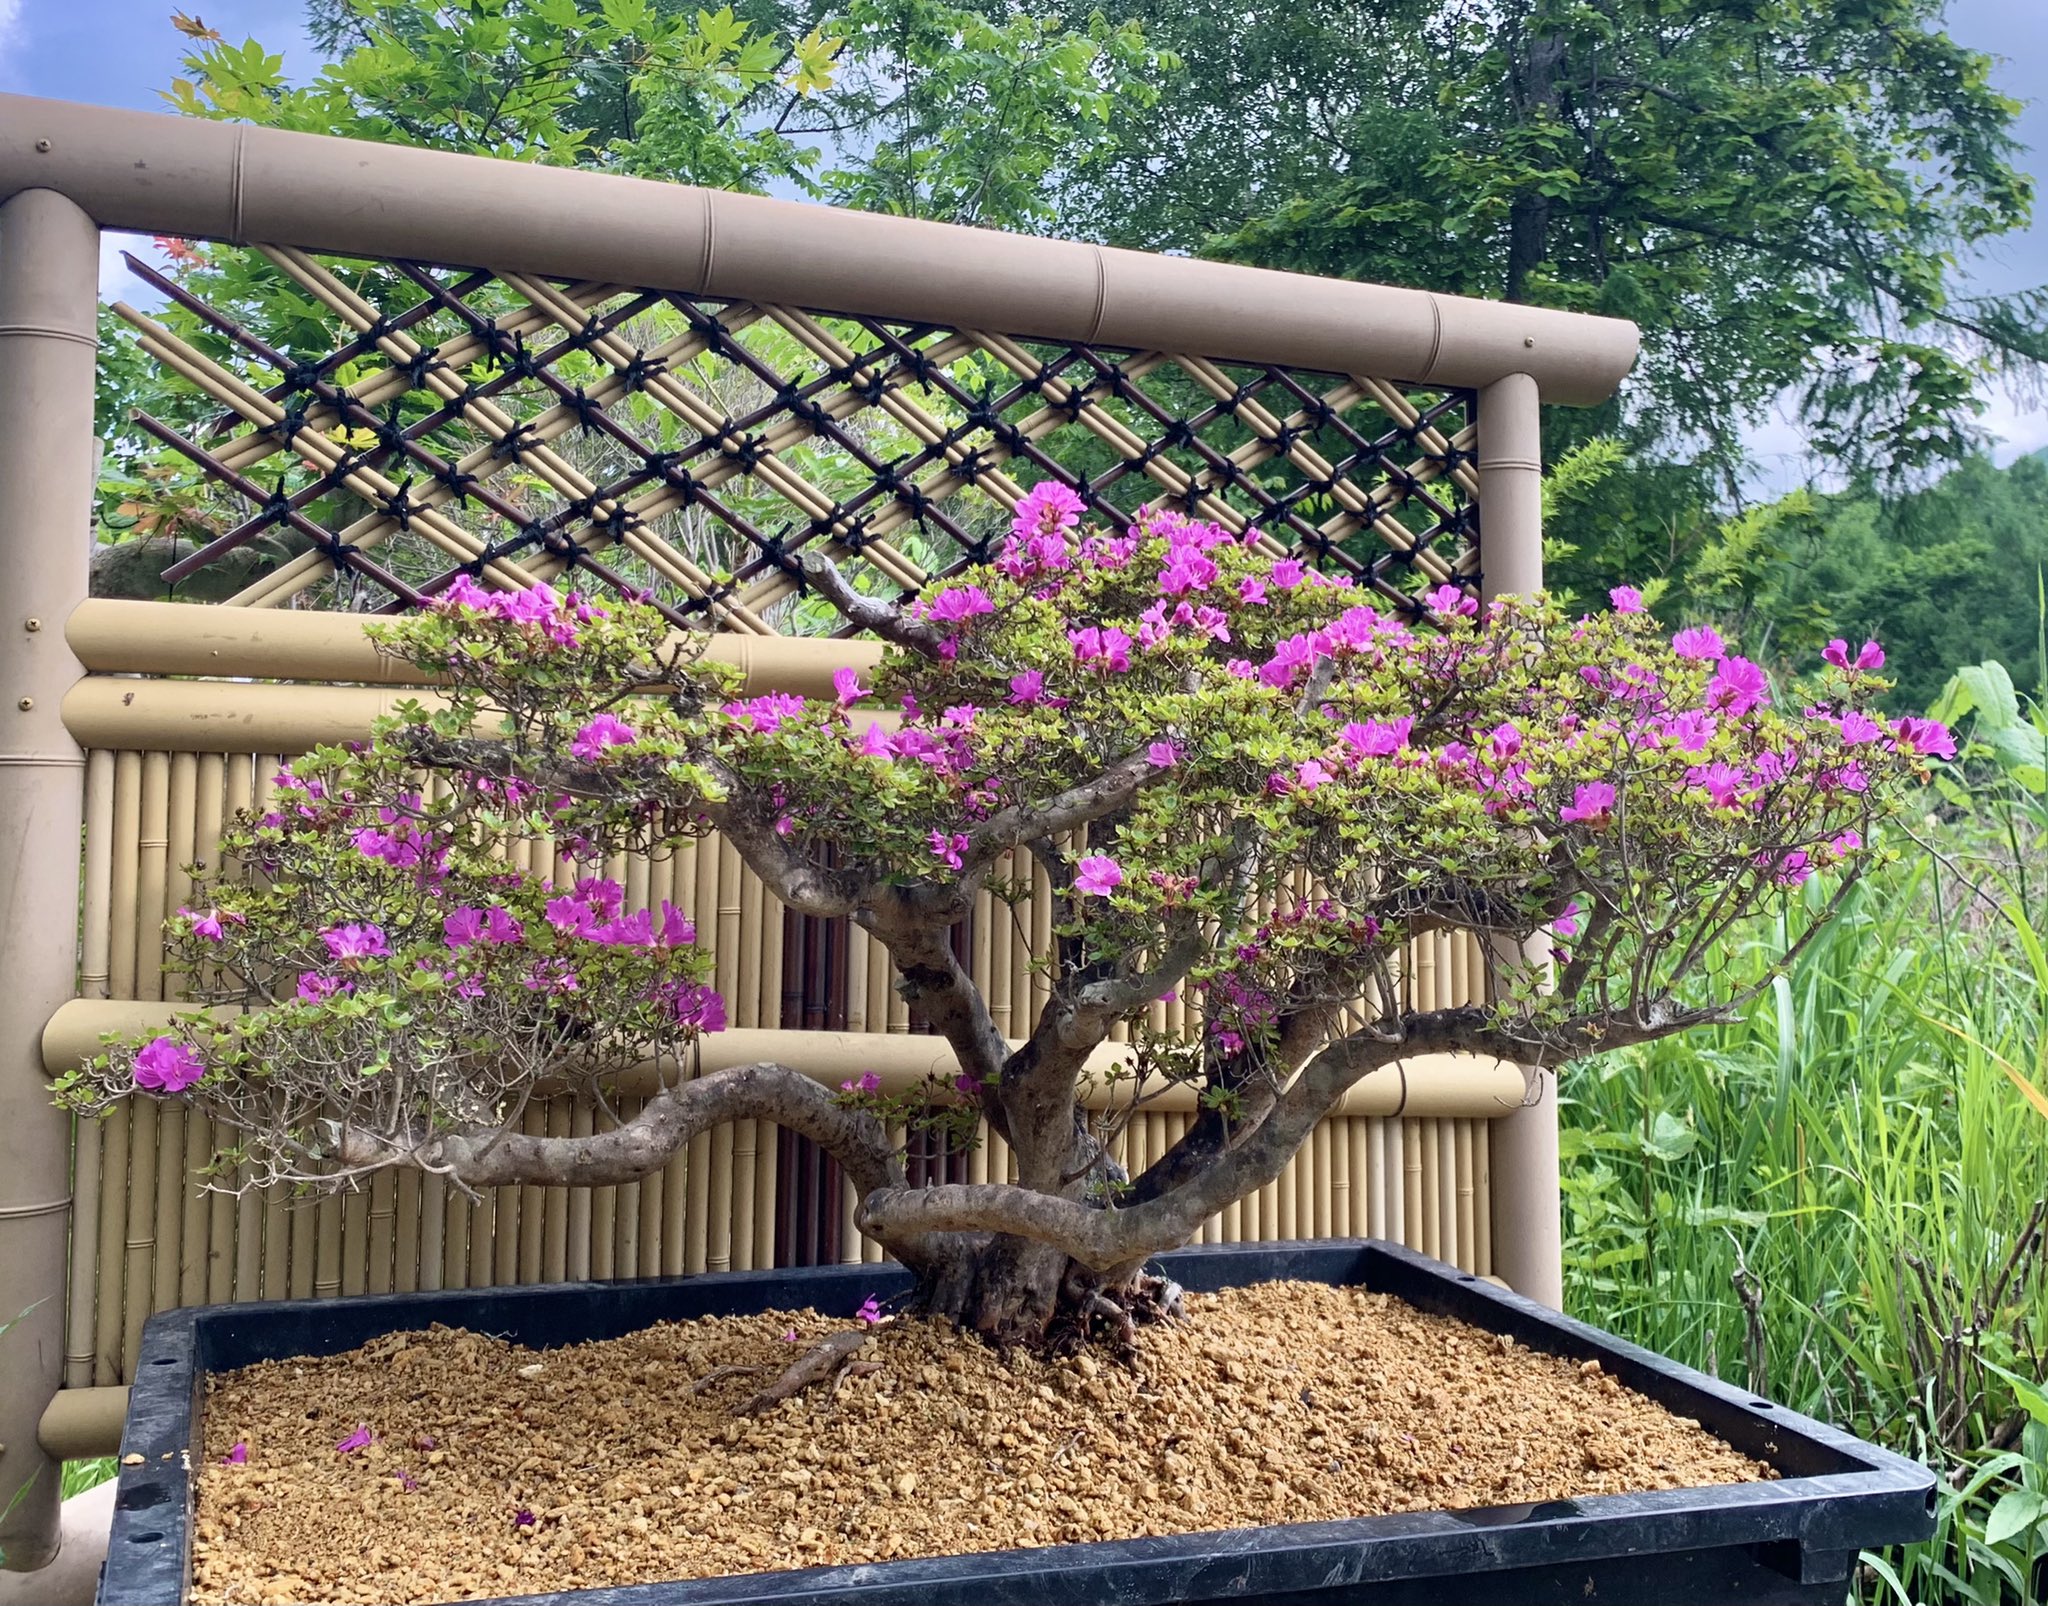 楽しい盆栽日記 3週間ほど前に根洗して植え替えたミヤマキリシマツツジが咲きました 今年は花は少ないので満開になるように育てたいです モンシロチョウがとんて飛んでいました ミヤマキリシマツツジ 深山霧島ツツジ 根洗い Bonsai 盆栽